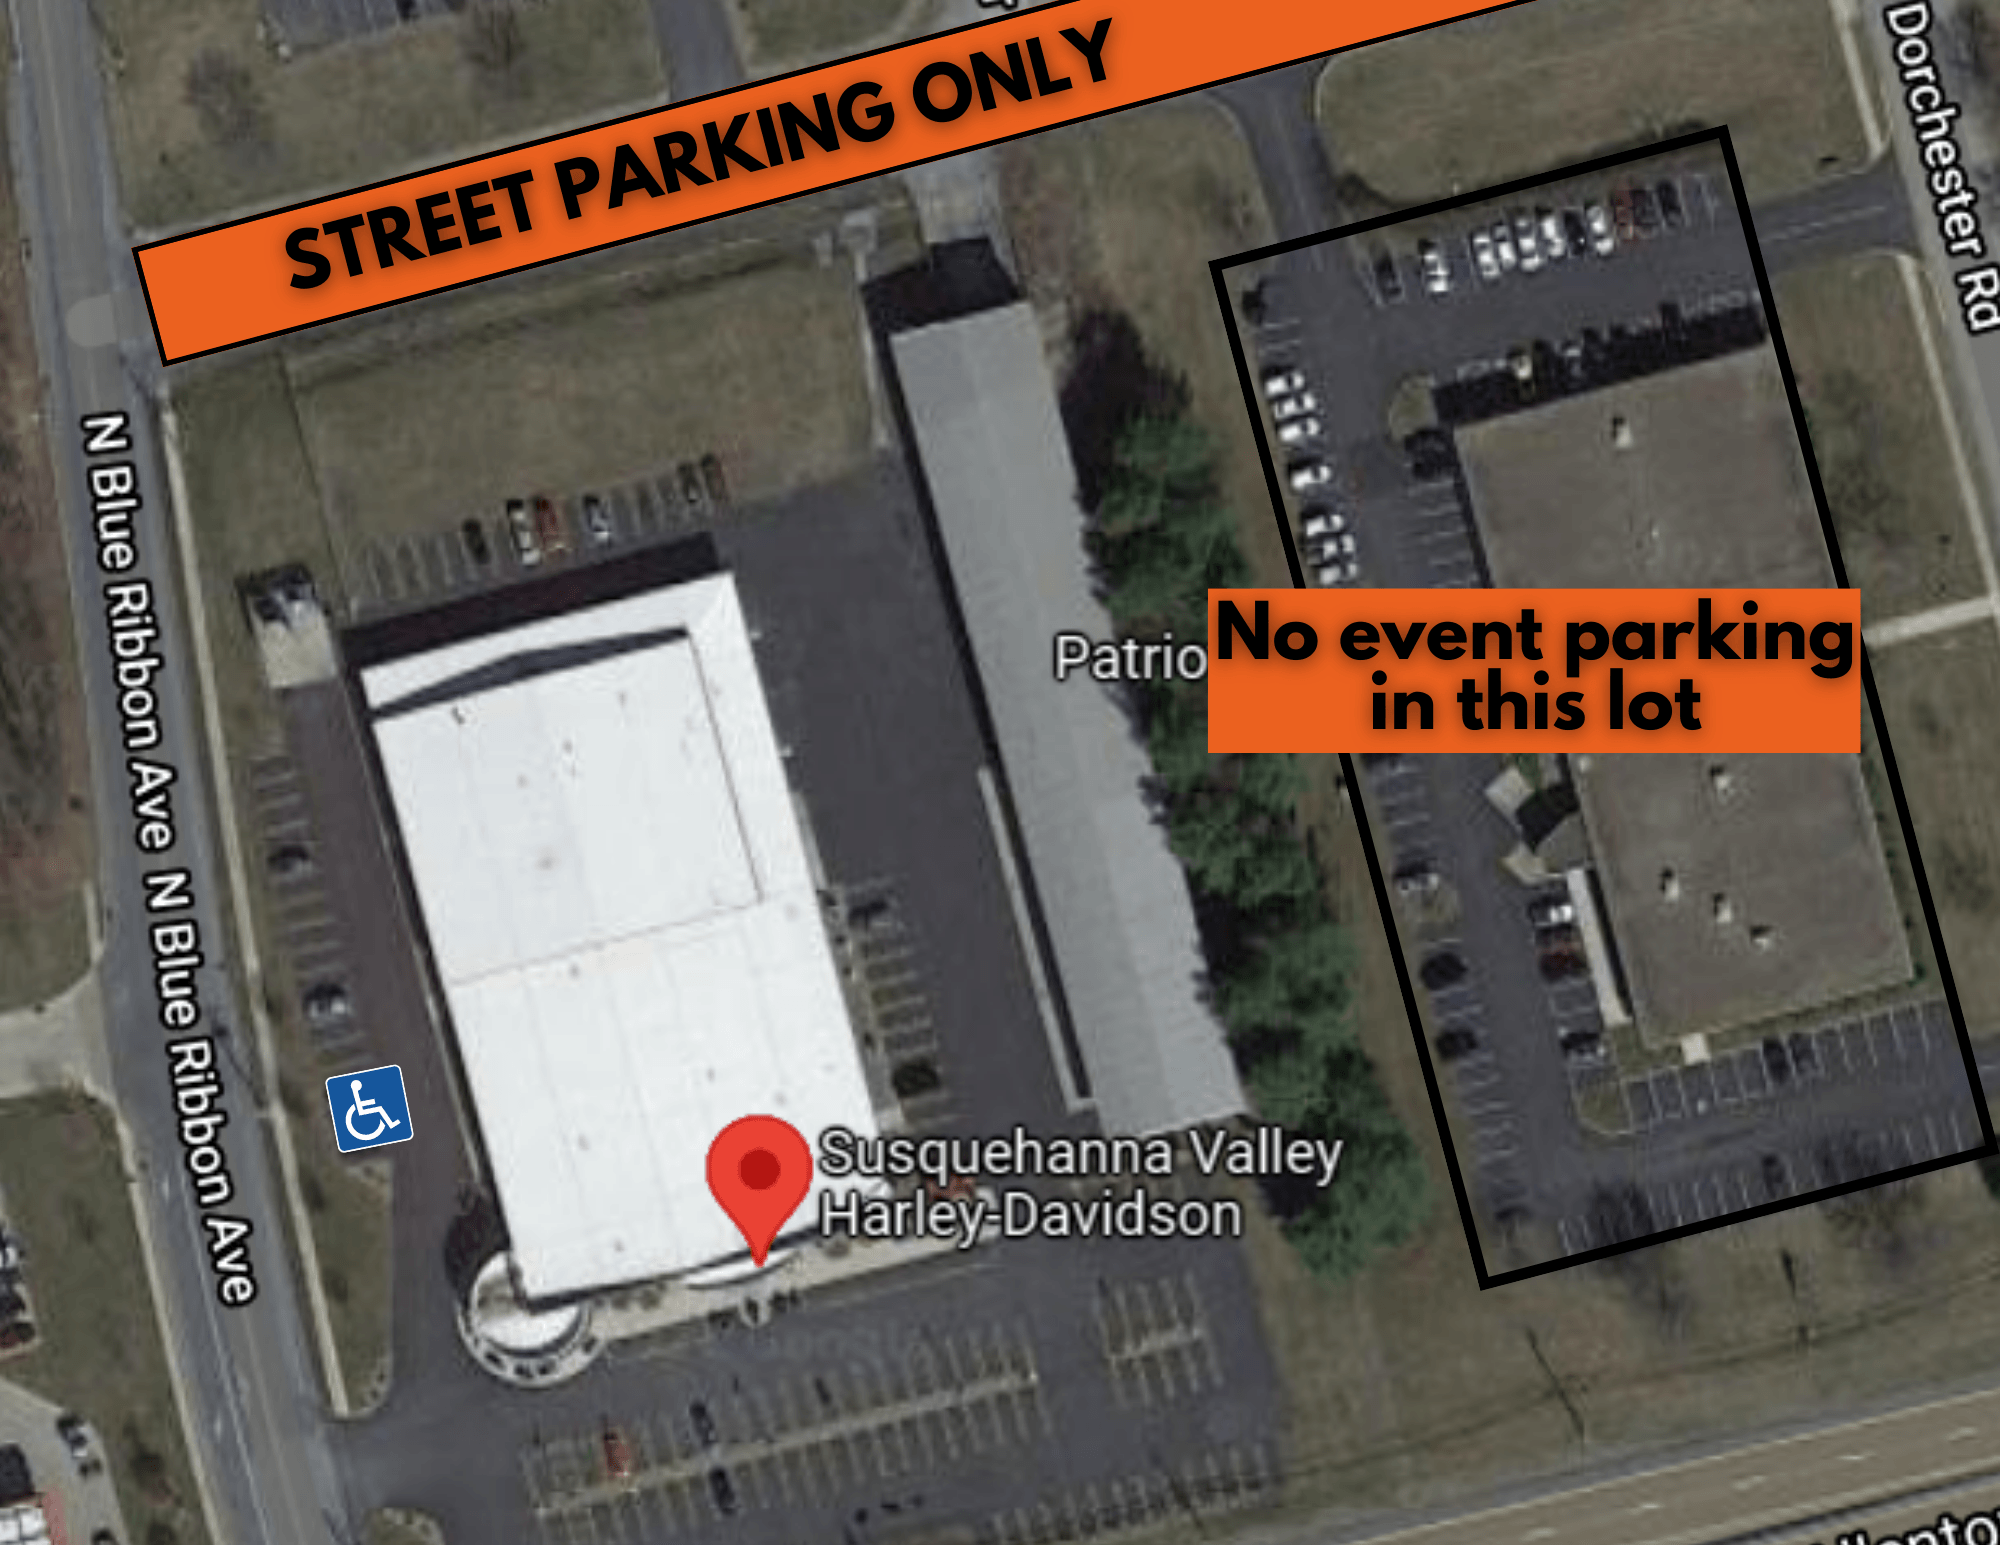 susquehanna valley harley-davidson event parking